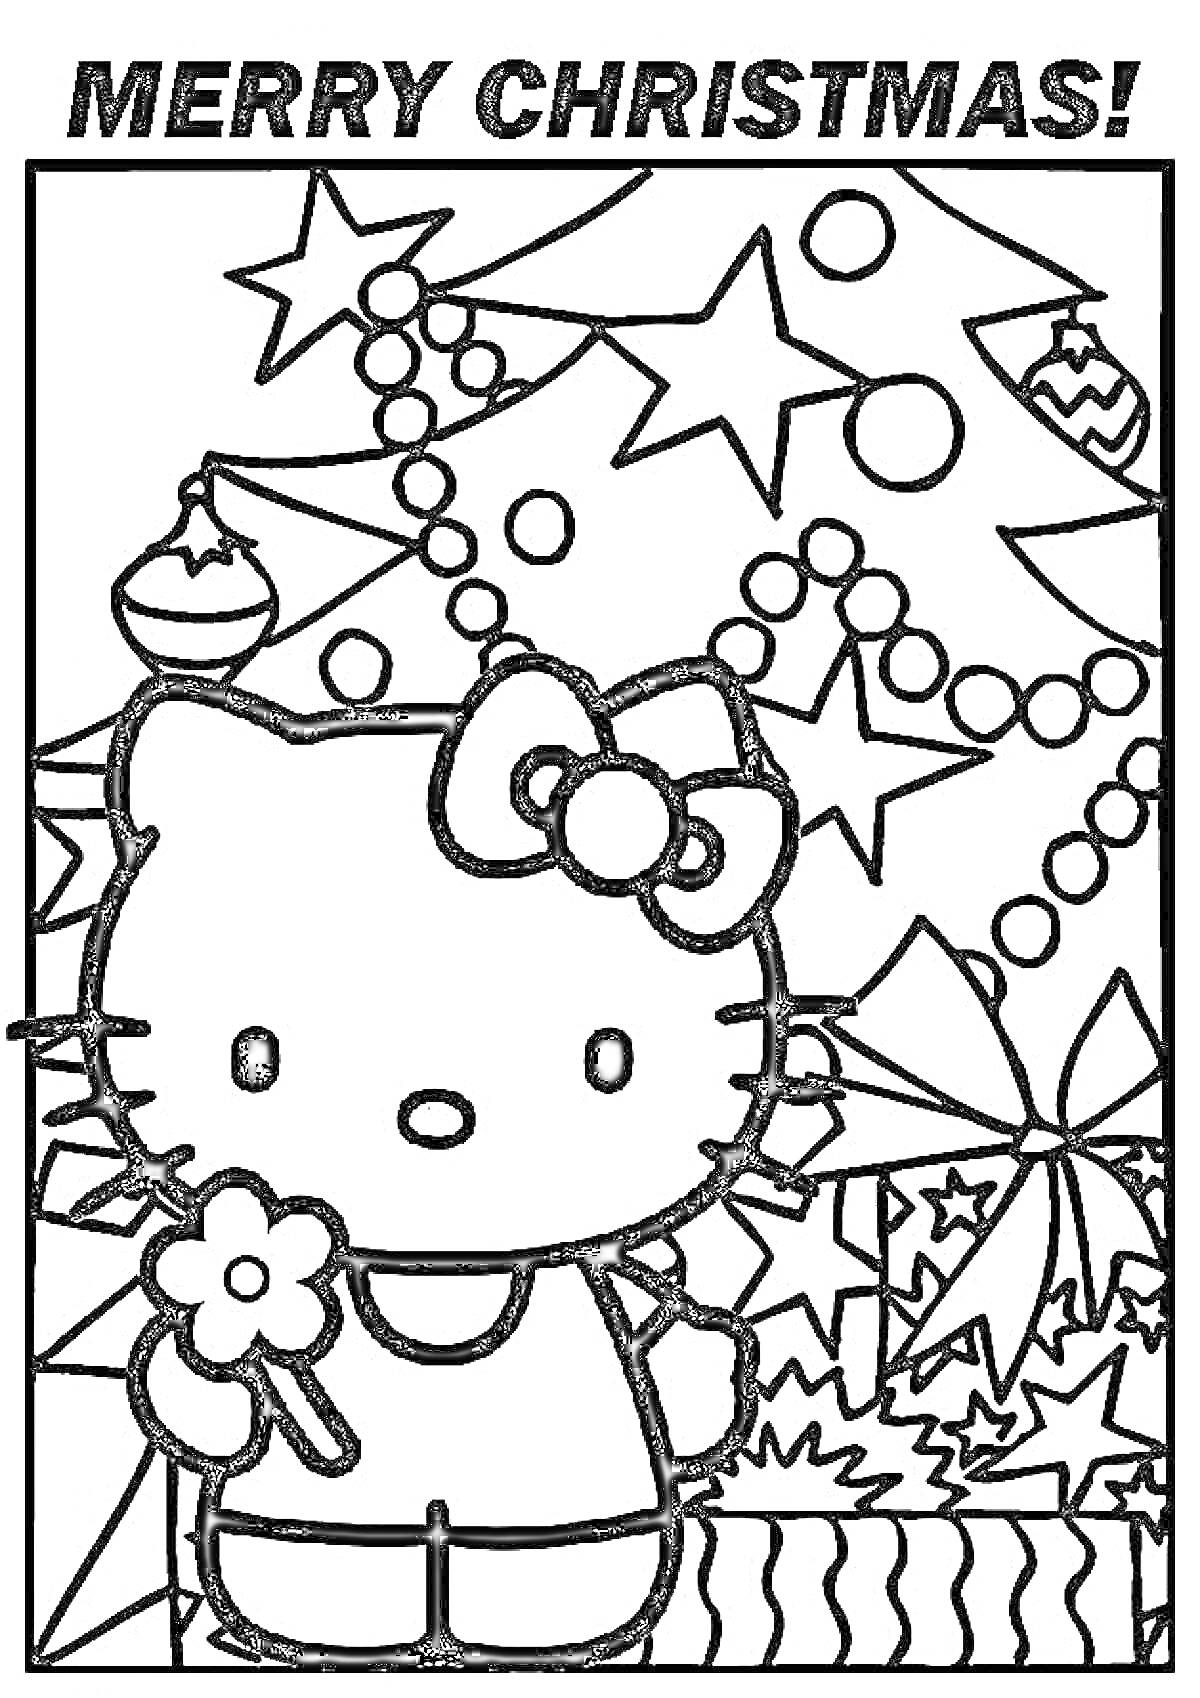 Hello Kitty с цветком на фоне рождественской елки с шарами, гирляндами и звездочками